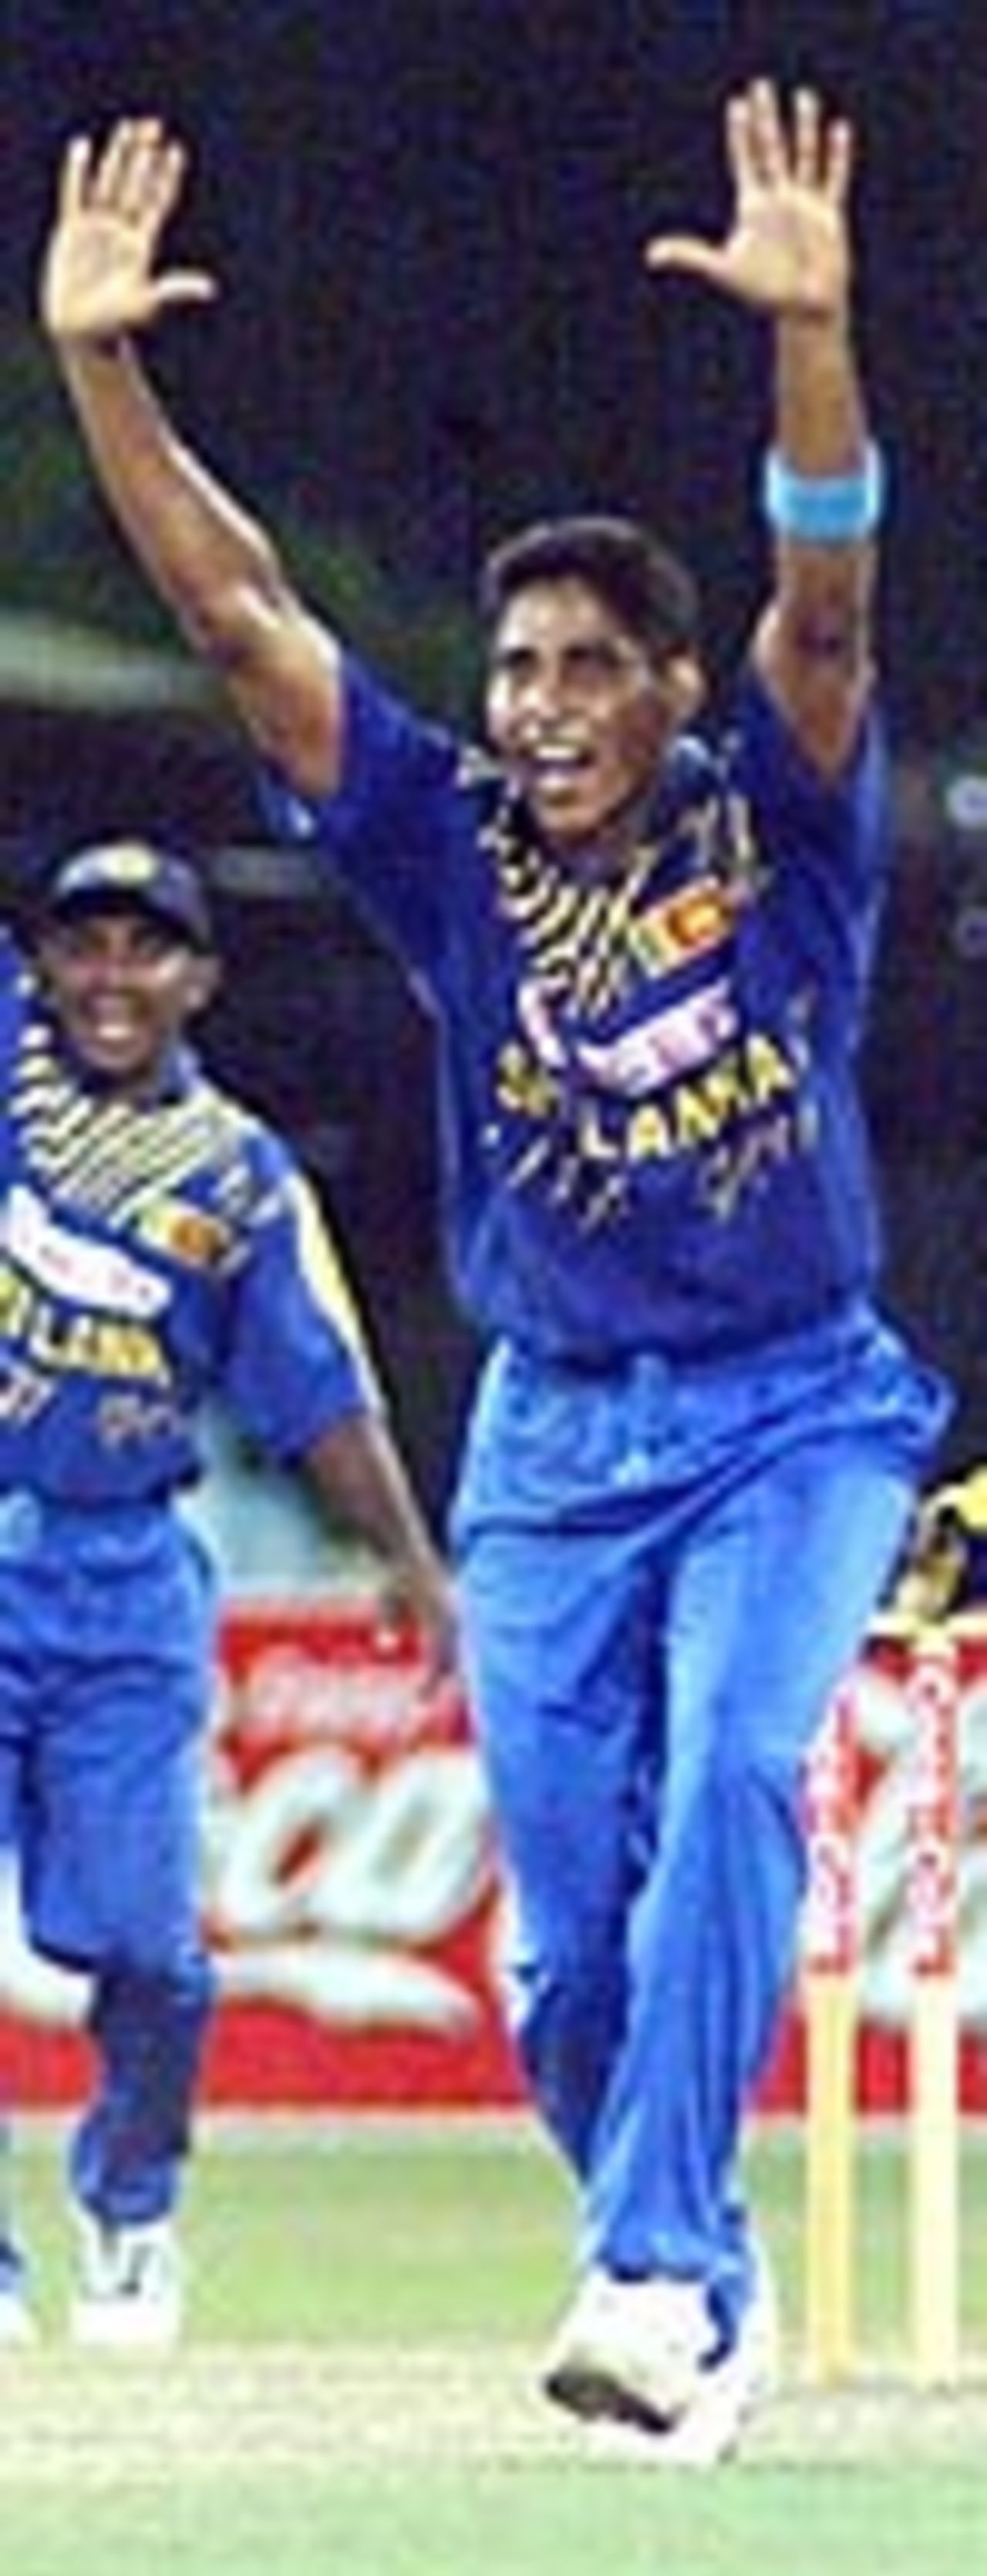 Taken on the 2001 West Indies tour of Sri Lanka